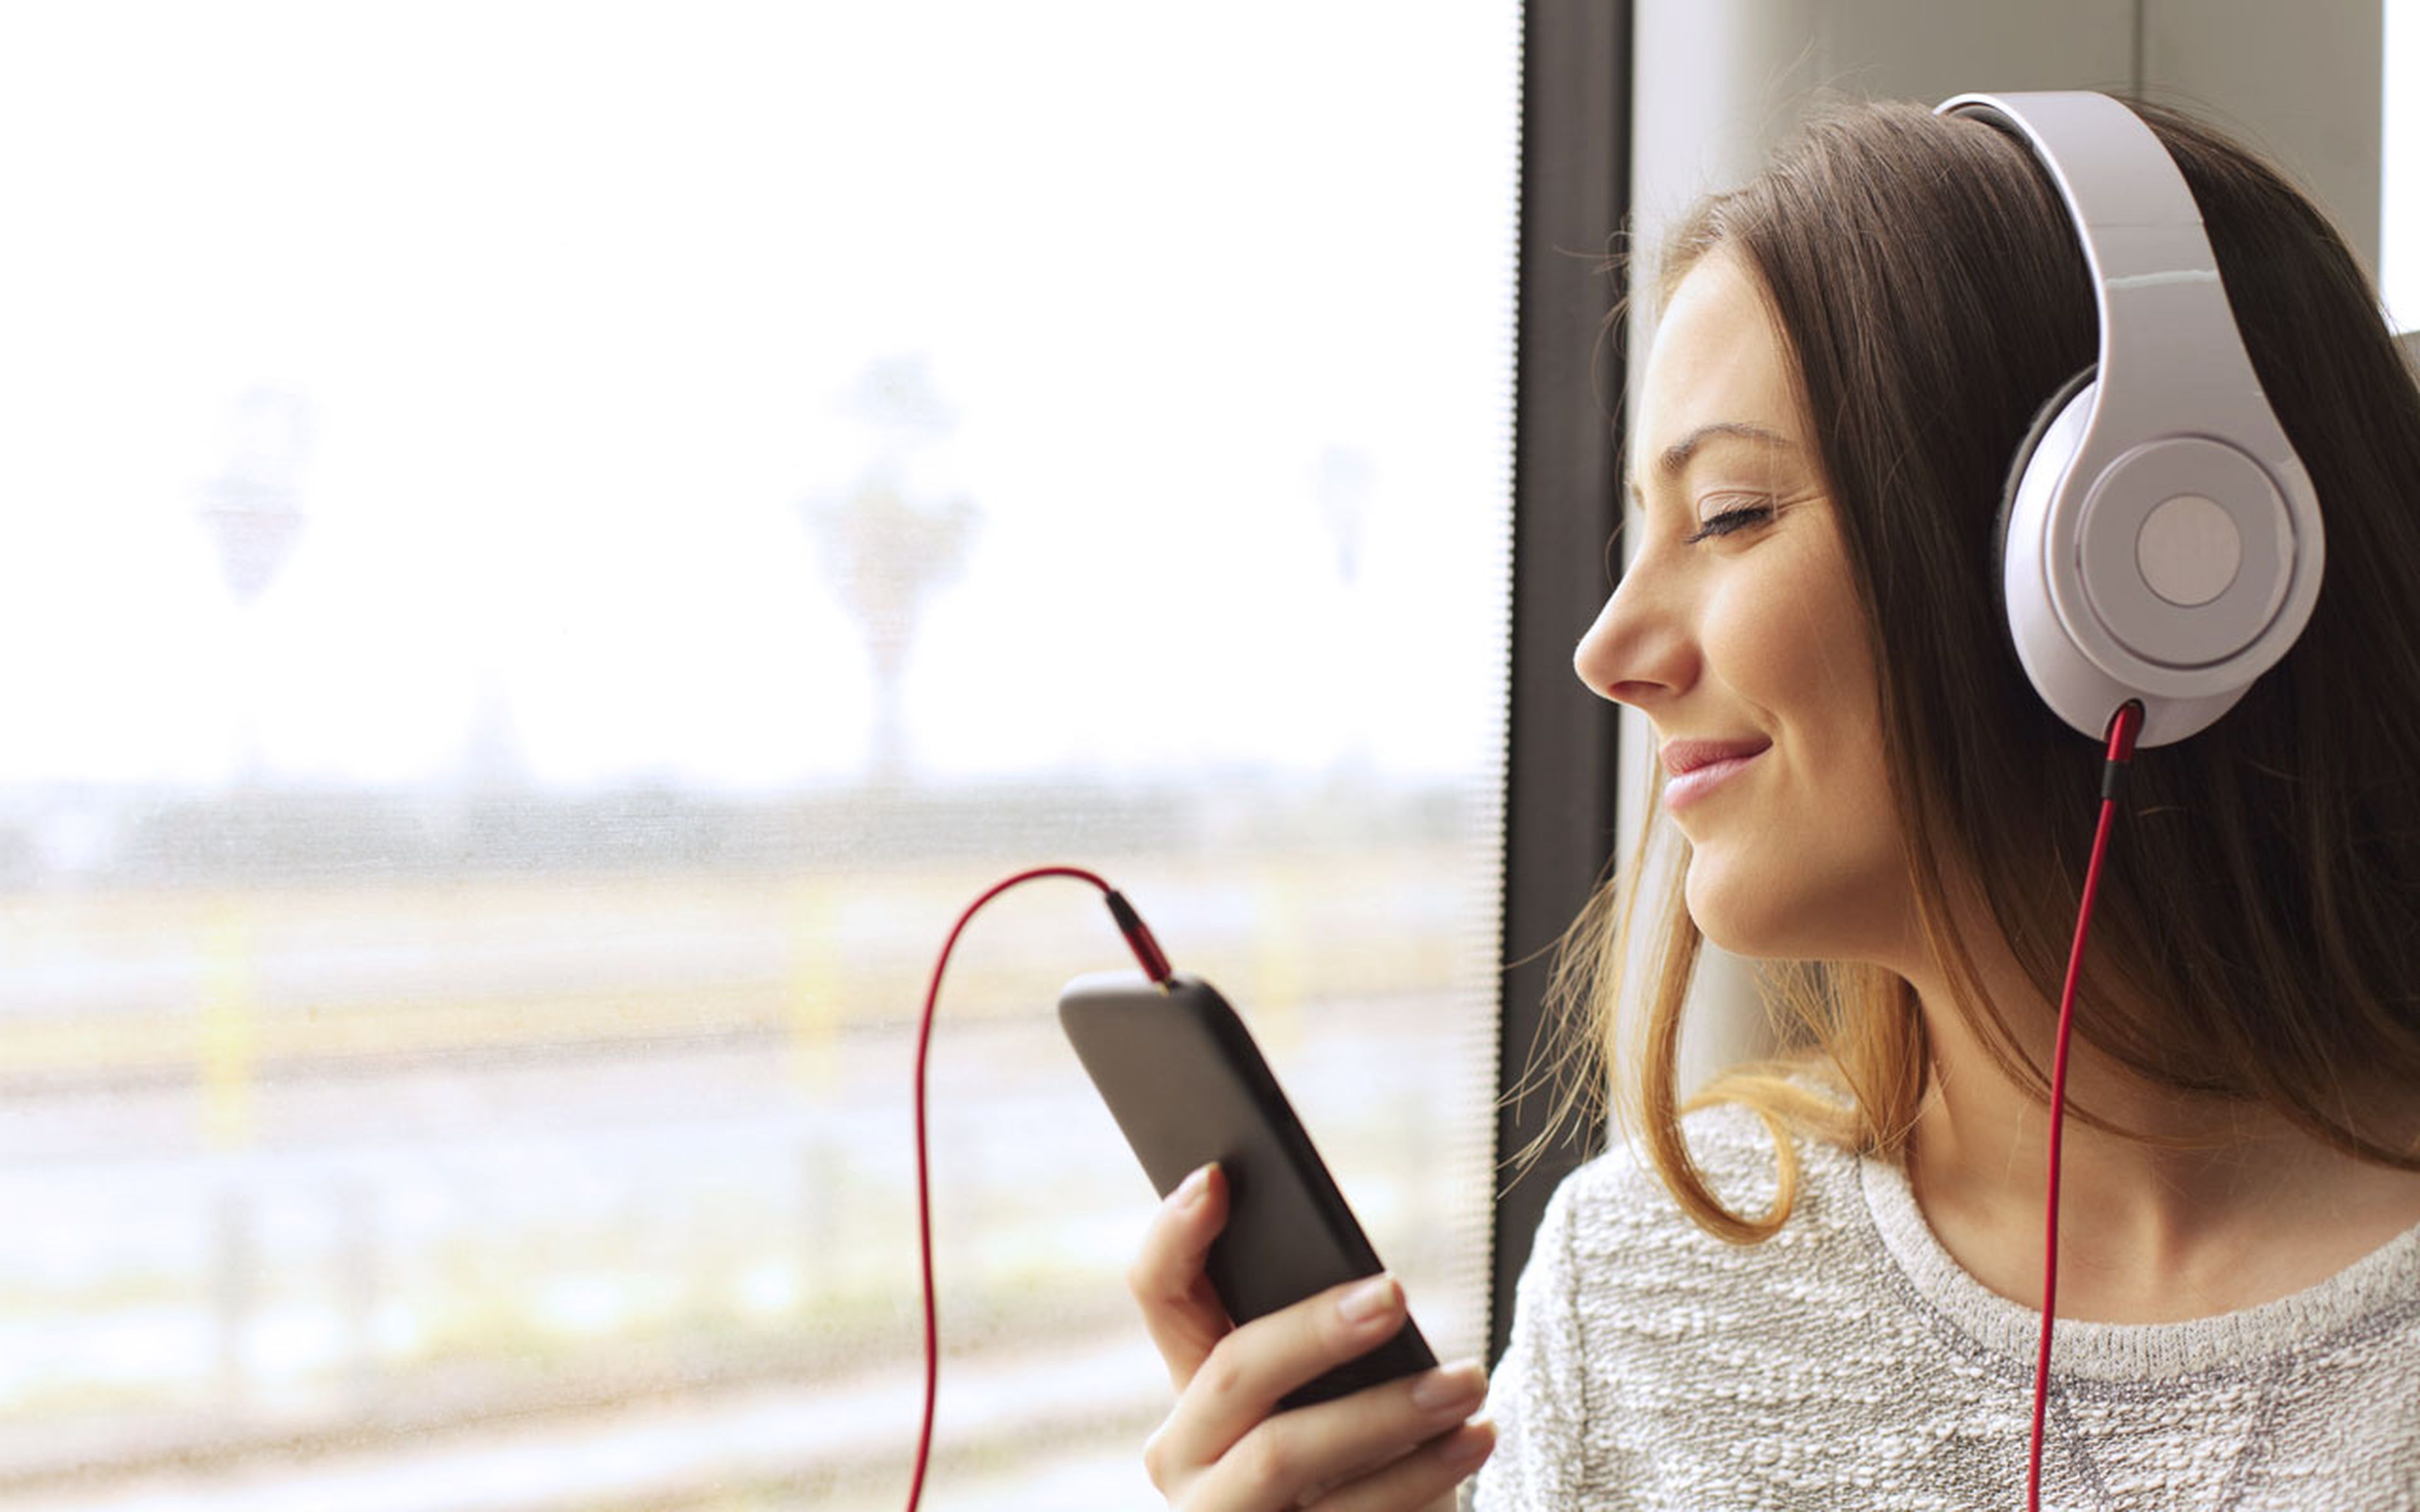 Los 5 mejores móviles para escuchar música que puedes comprar en 2019